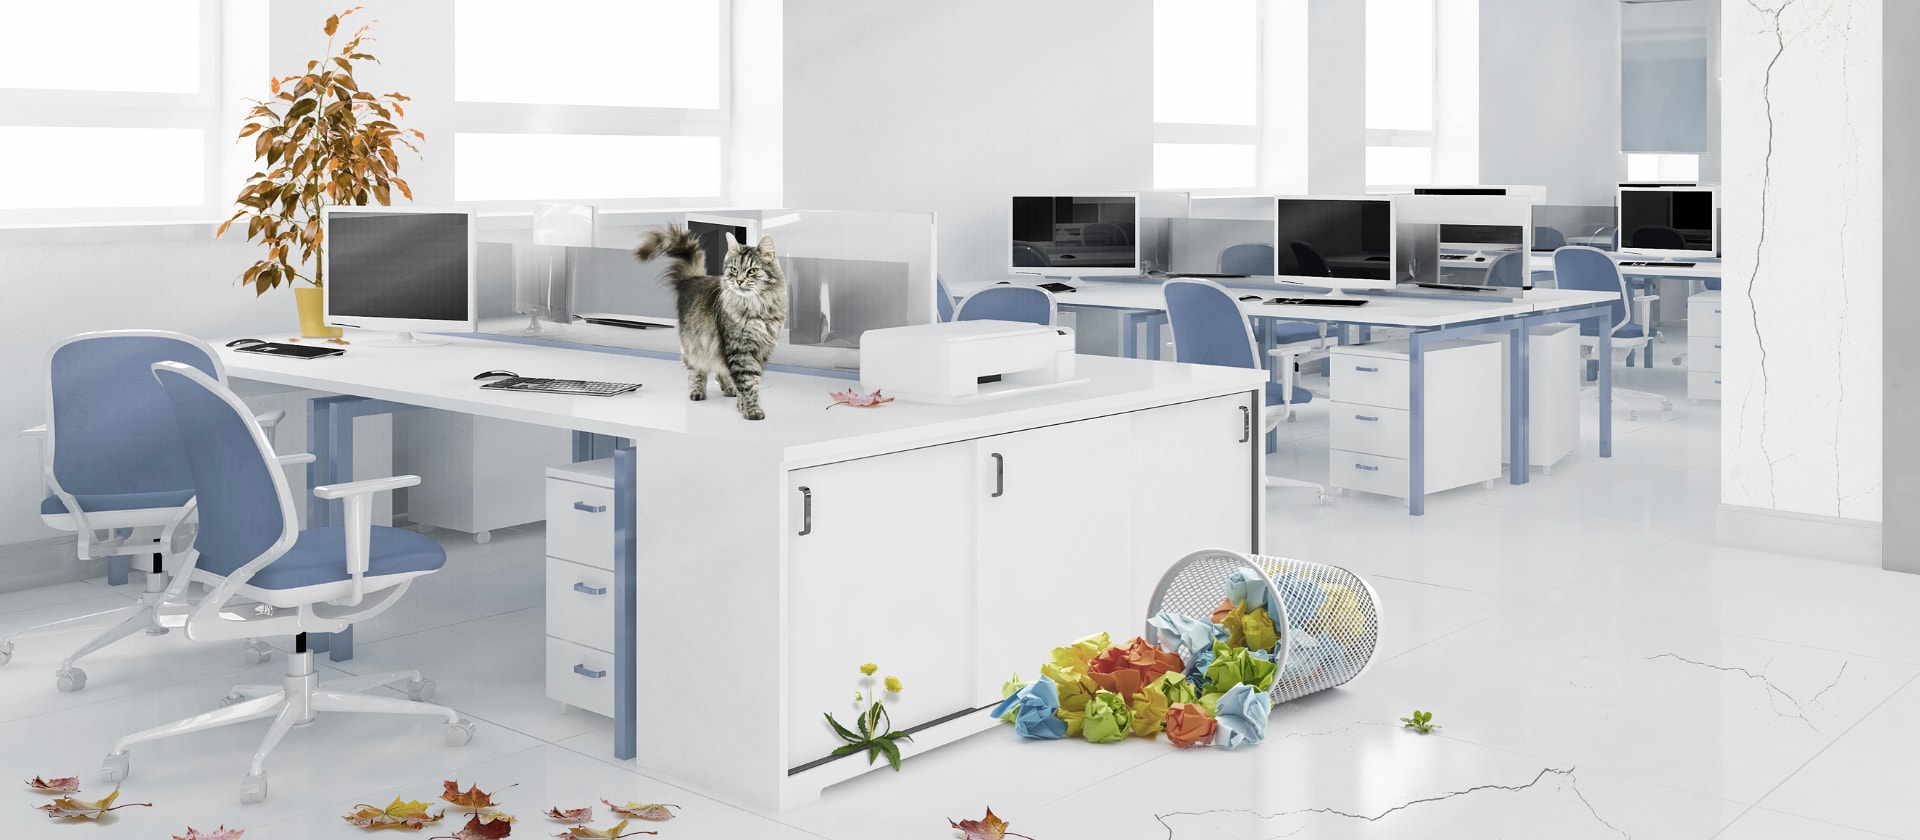 Auf der Abbildung ist ein heller Büroraum zu sehen. Darin ist ein Papiermülleimer umgekippt und eine Katze ist auf den Schreibtisch geklettert. Die Büropflanzen verlieren ihre Blätter und die Wände werden rissig.